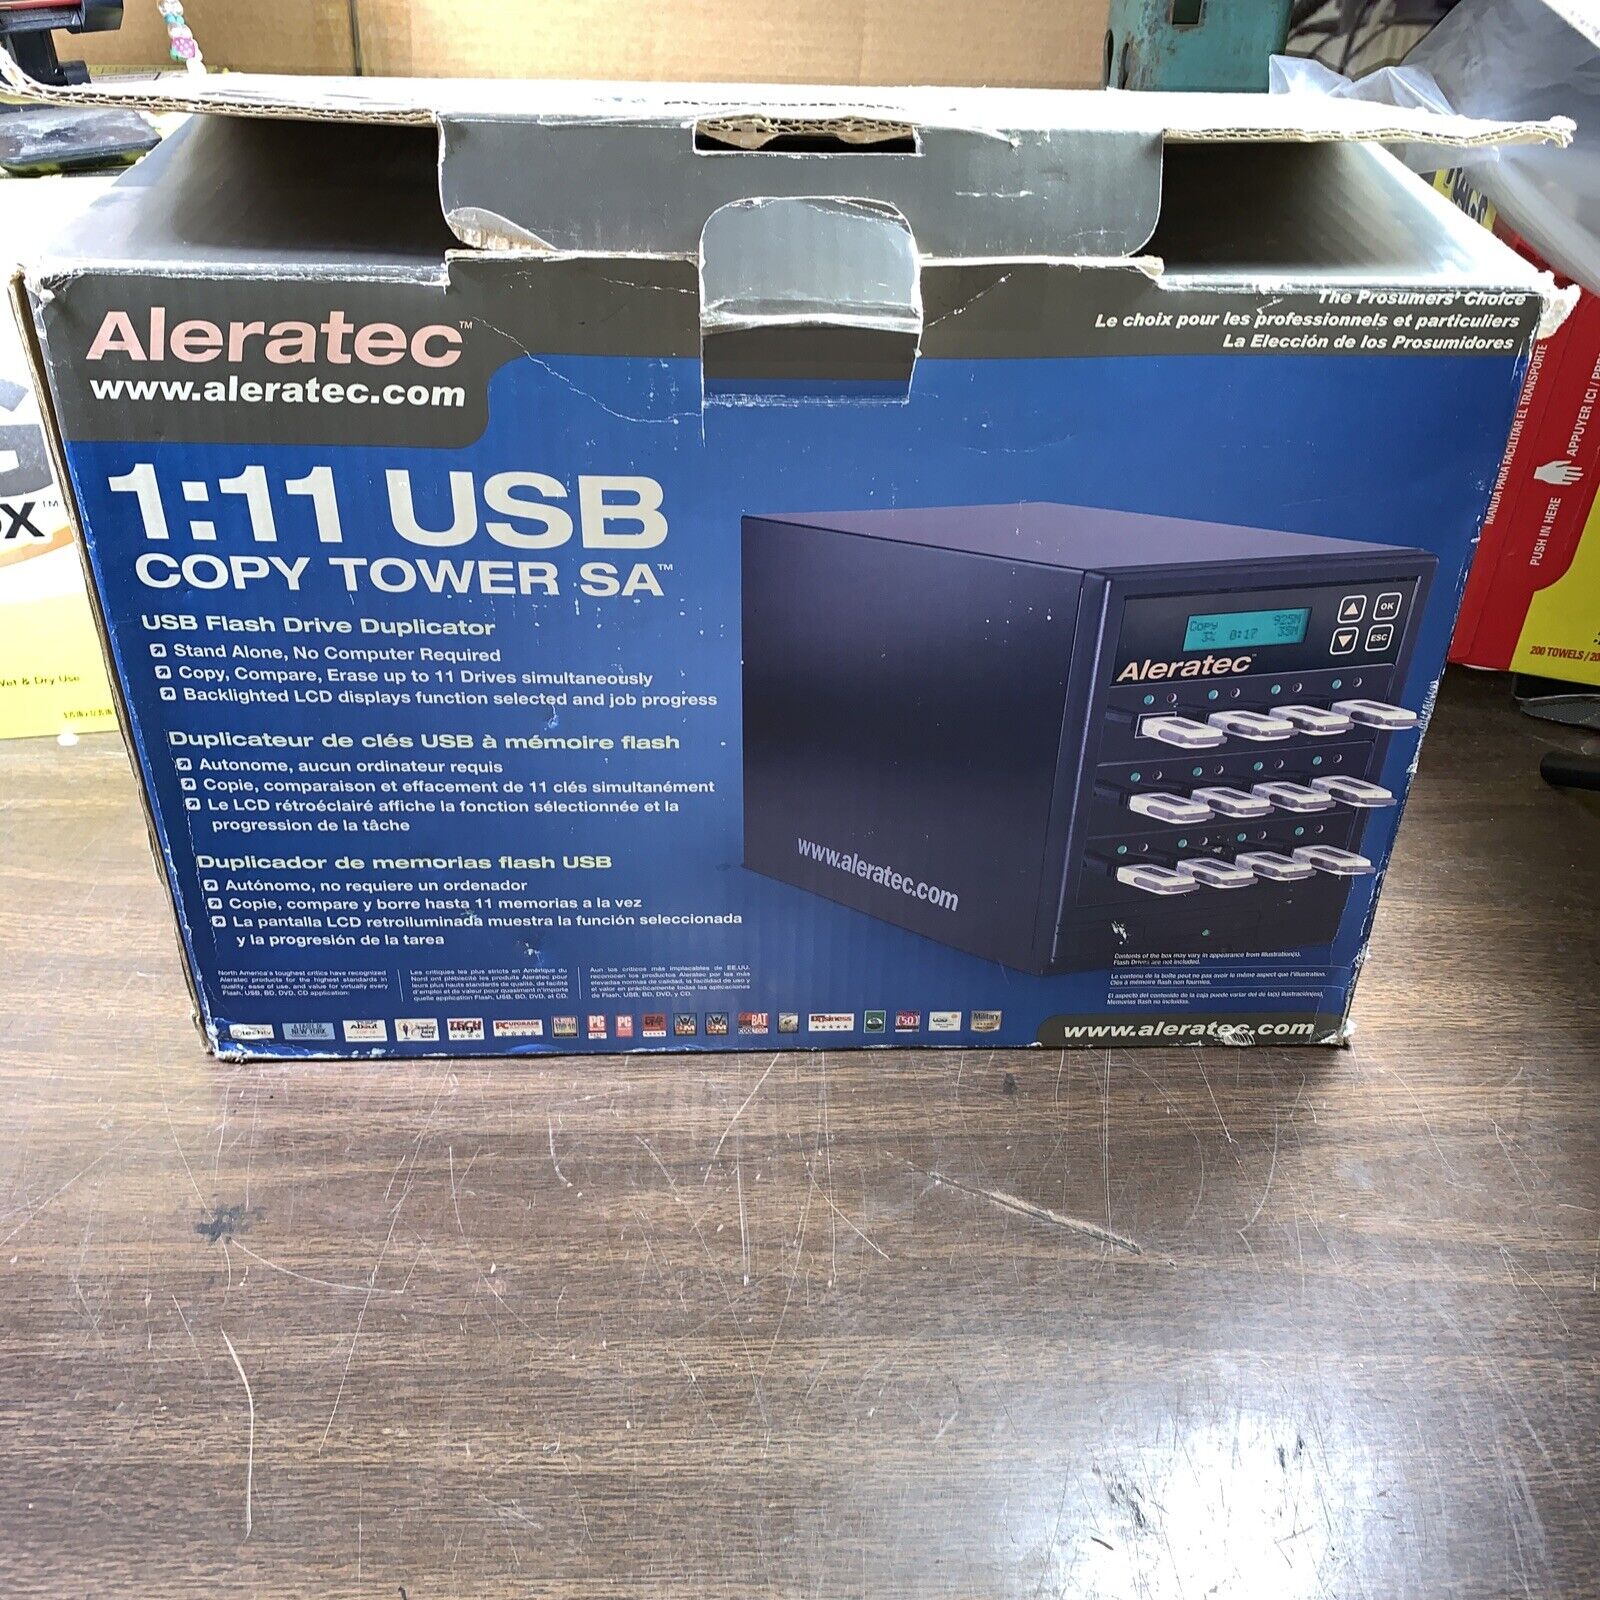 ALERATEC 1:11 USB COPY TOWER SA